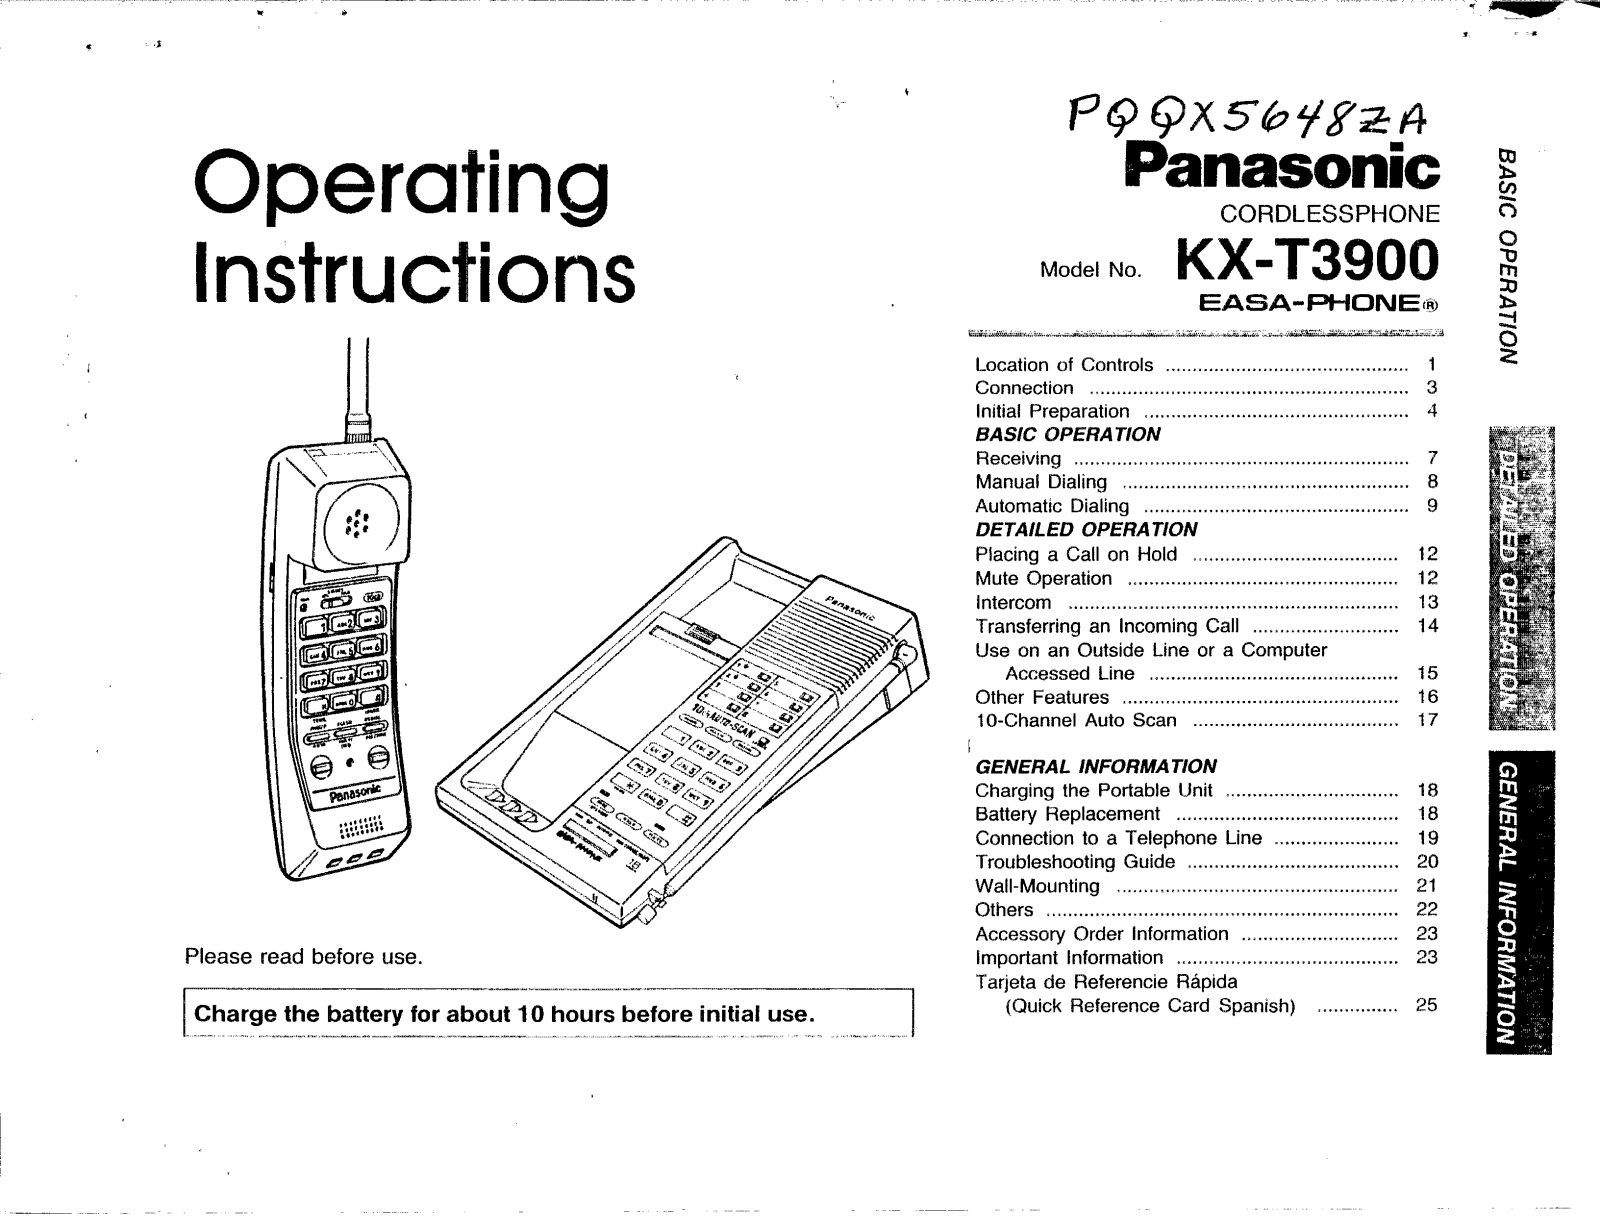 Panasonic kx-t3900 Operation Manual